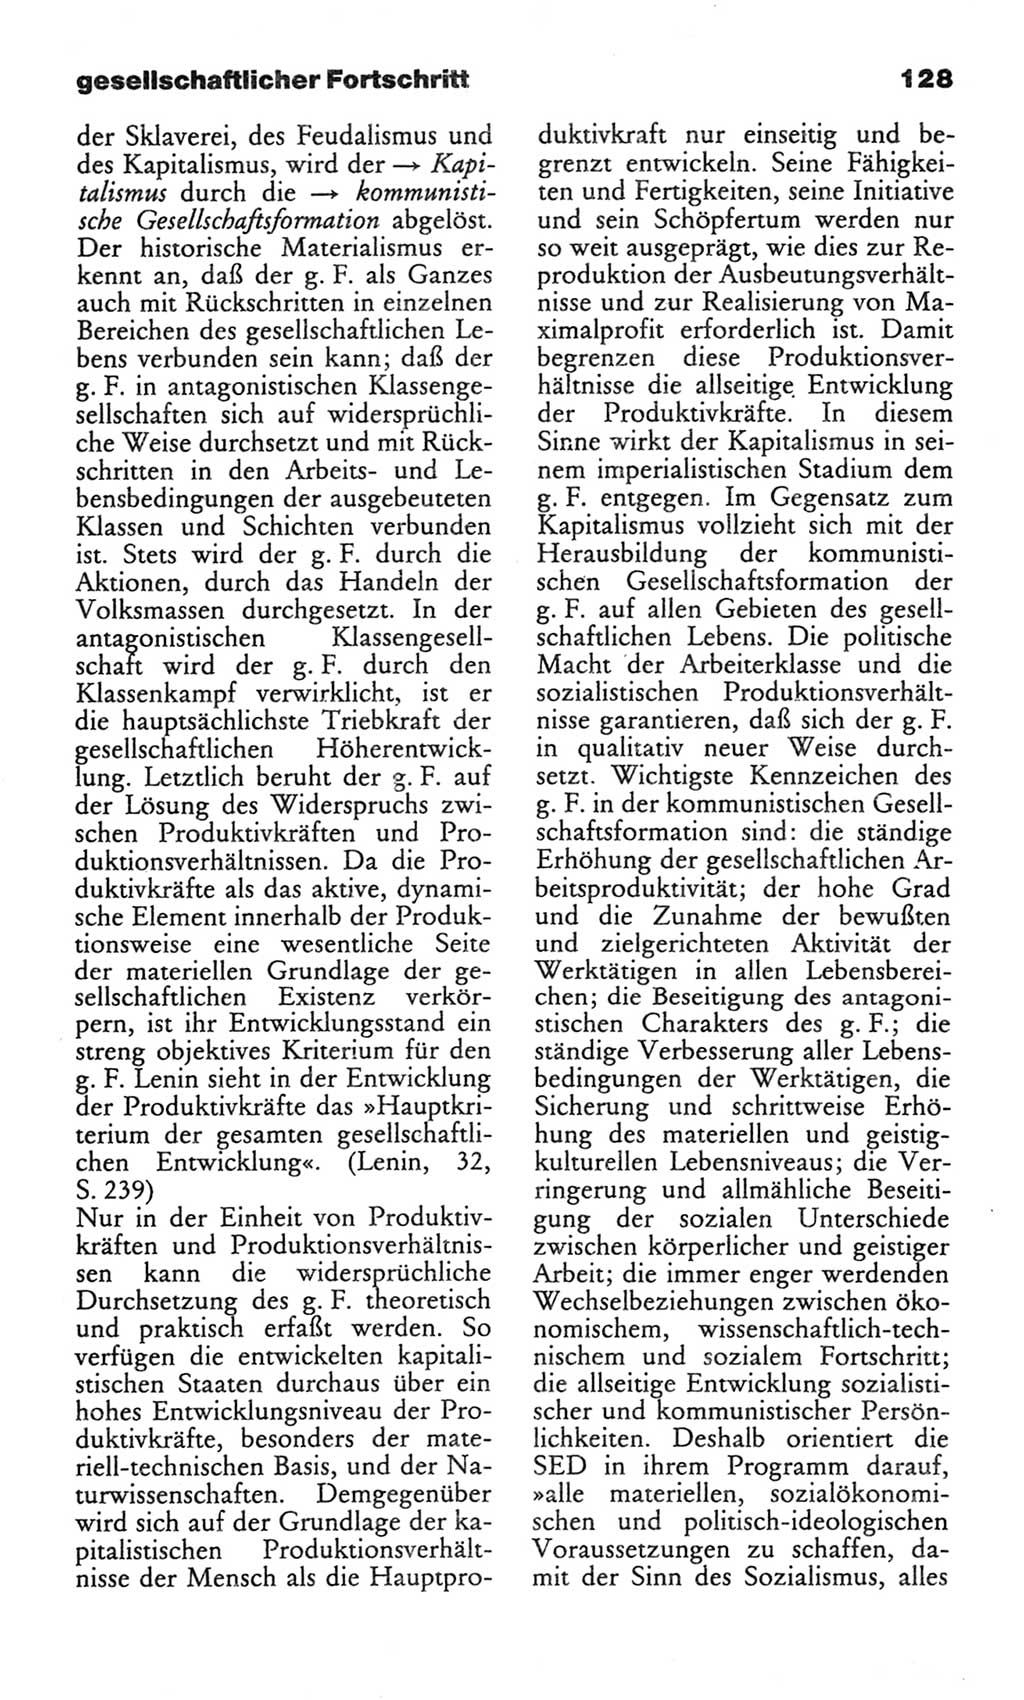 Wörterbuch des wissenschaftlichen Kommunismus [Deutsche Demokratische Republik (DDR)] 1982, Seite 128 (Wb. wiss. Komm. DDR 1982, S. 128)